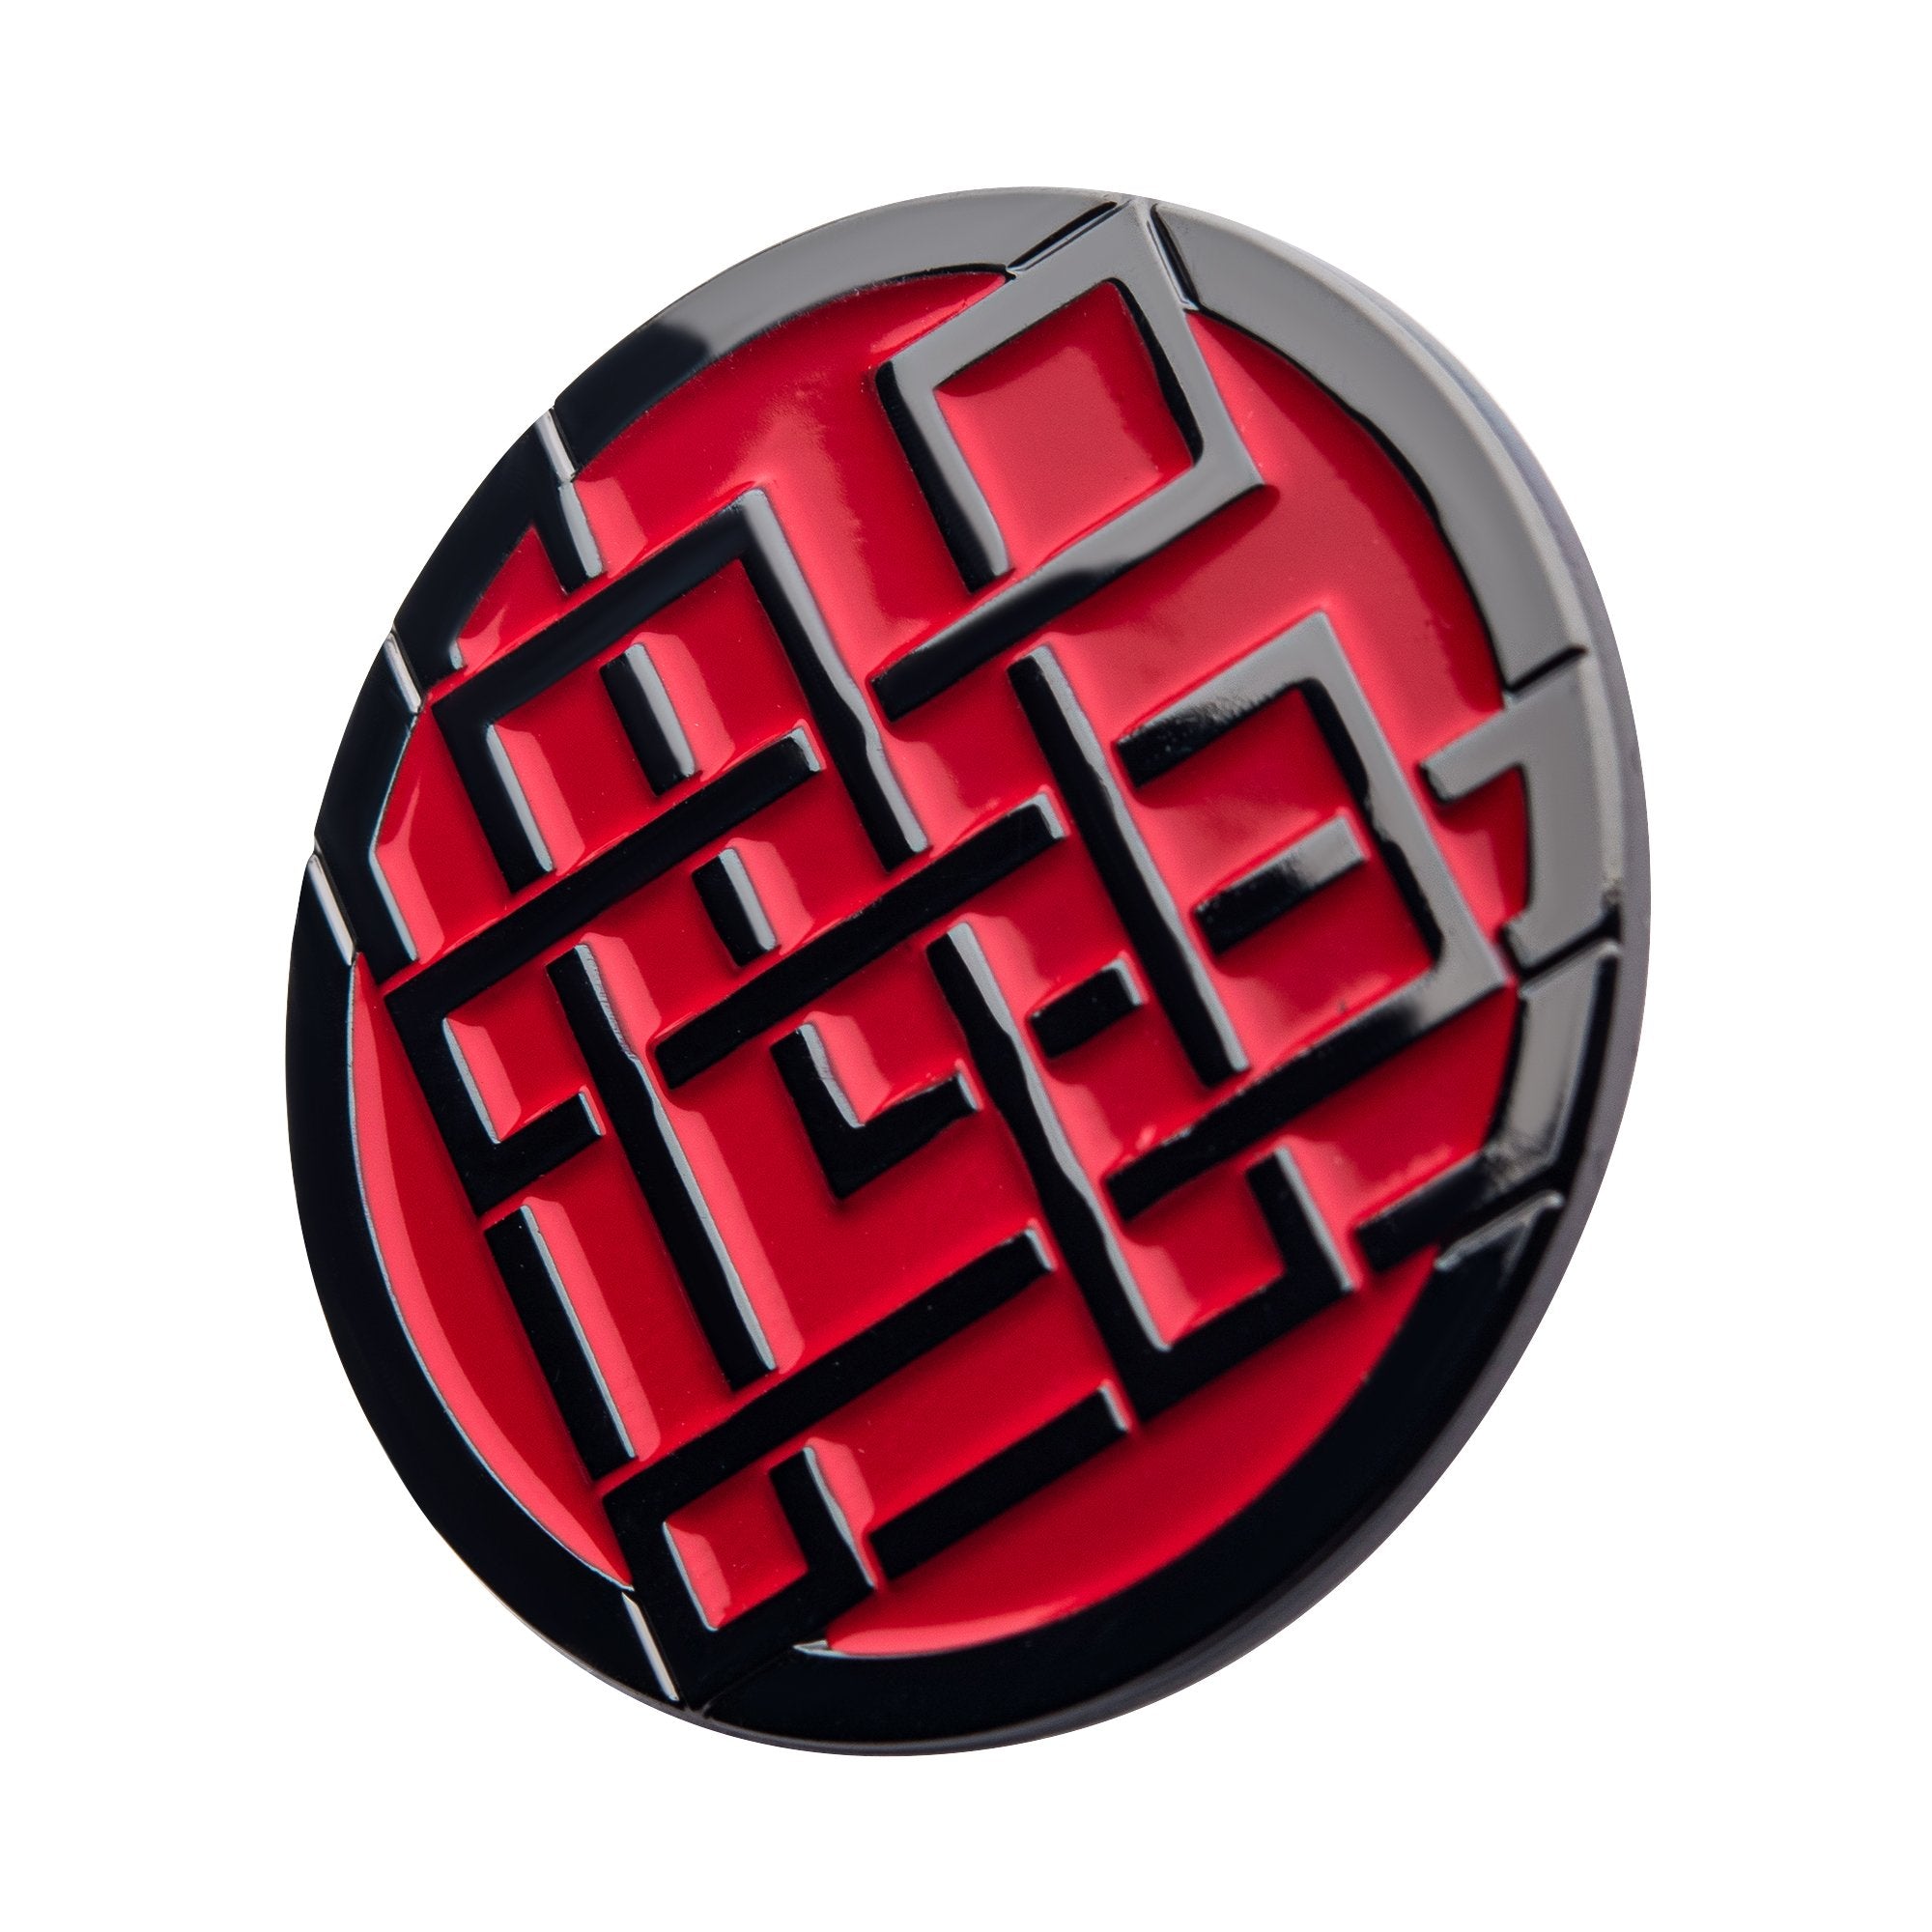 Marvel Shang-Chi Symbol Pin